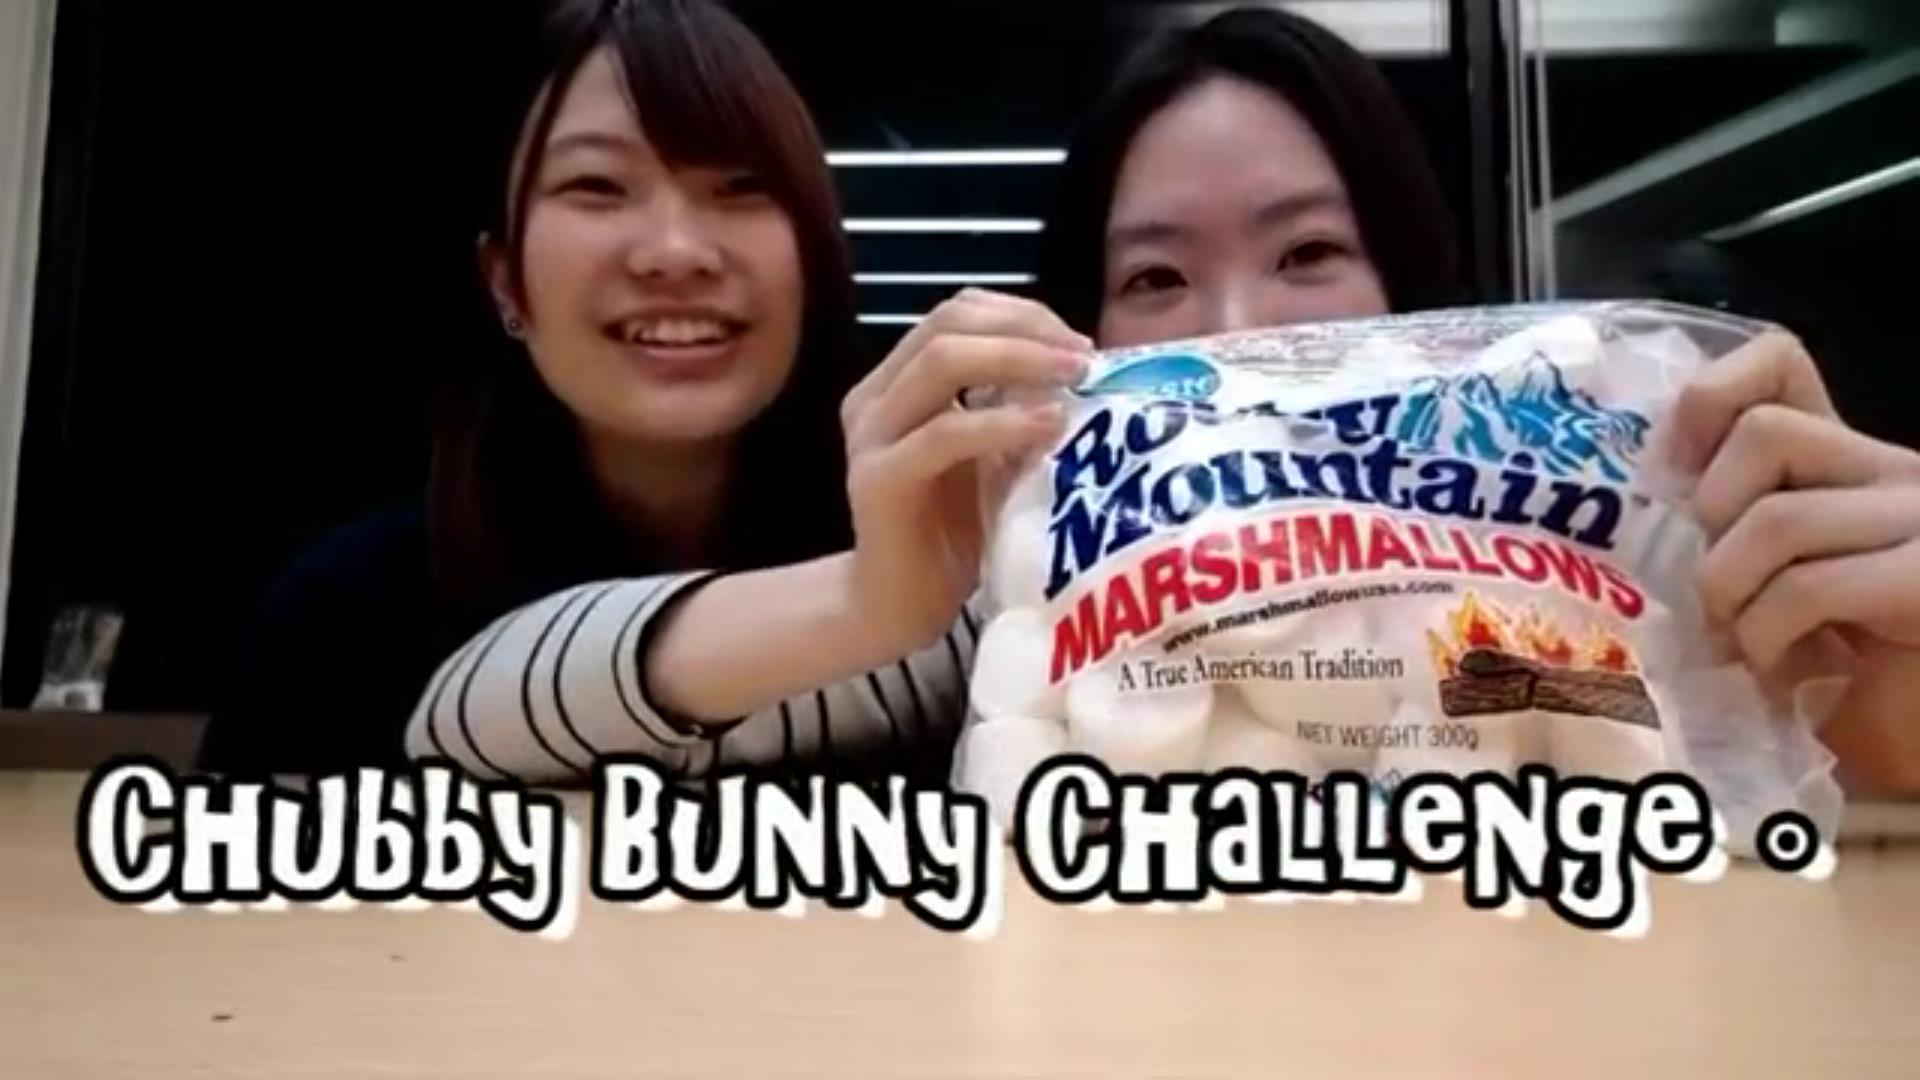 棉花糖挑戰。Chubby bunny challenge!!